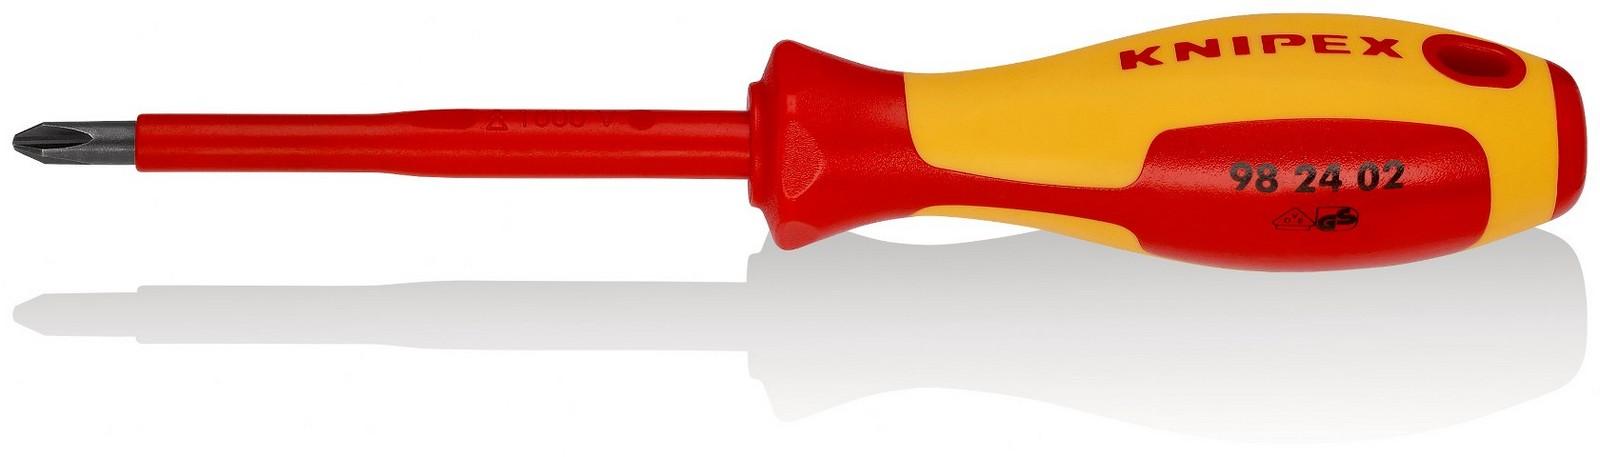 KNIPEX Odvijač krstasti 1000V VDE PH2 98 24 02 crveno-žuti